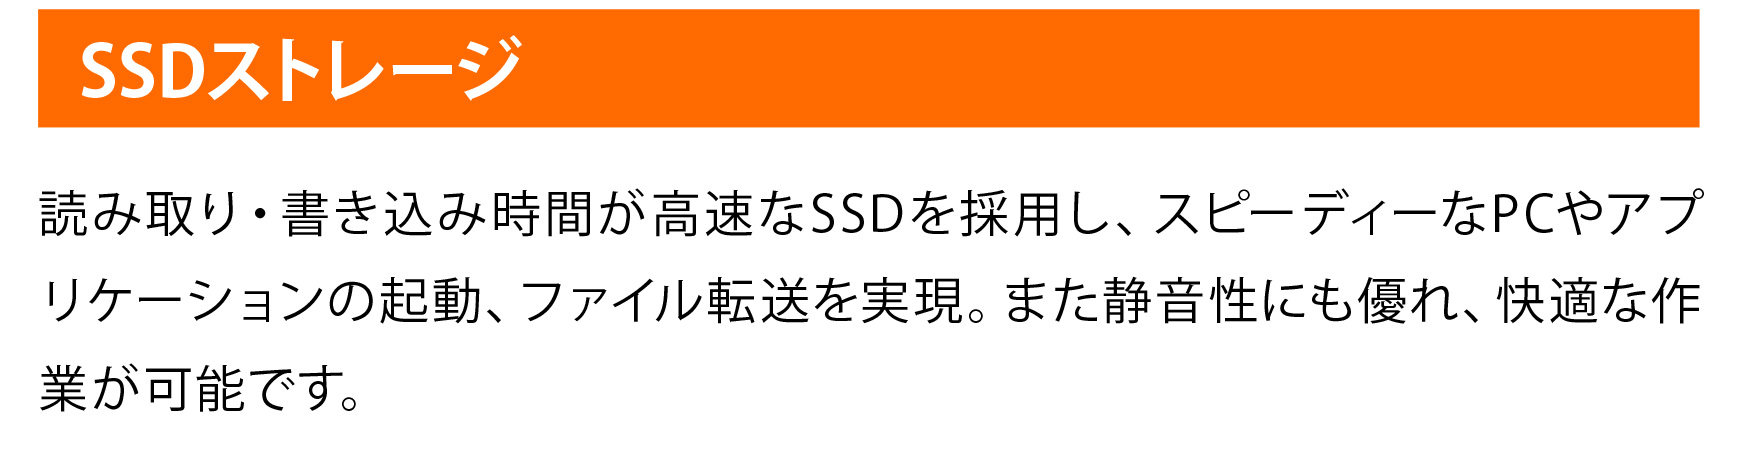 SSDXg[W